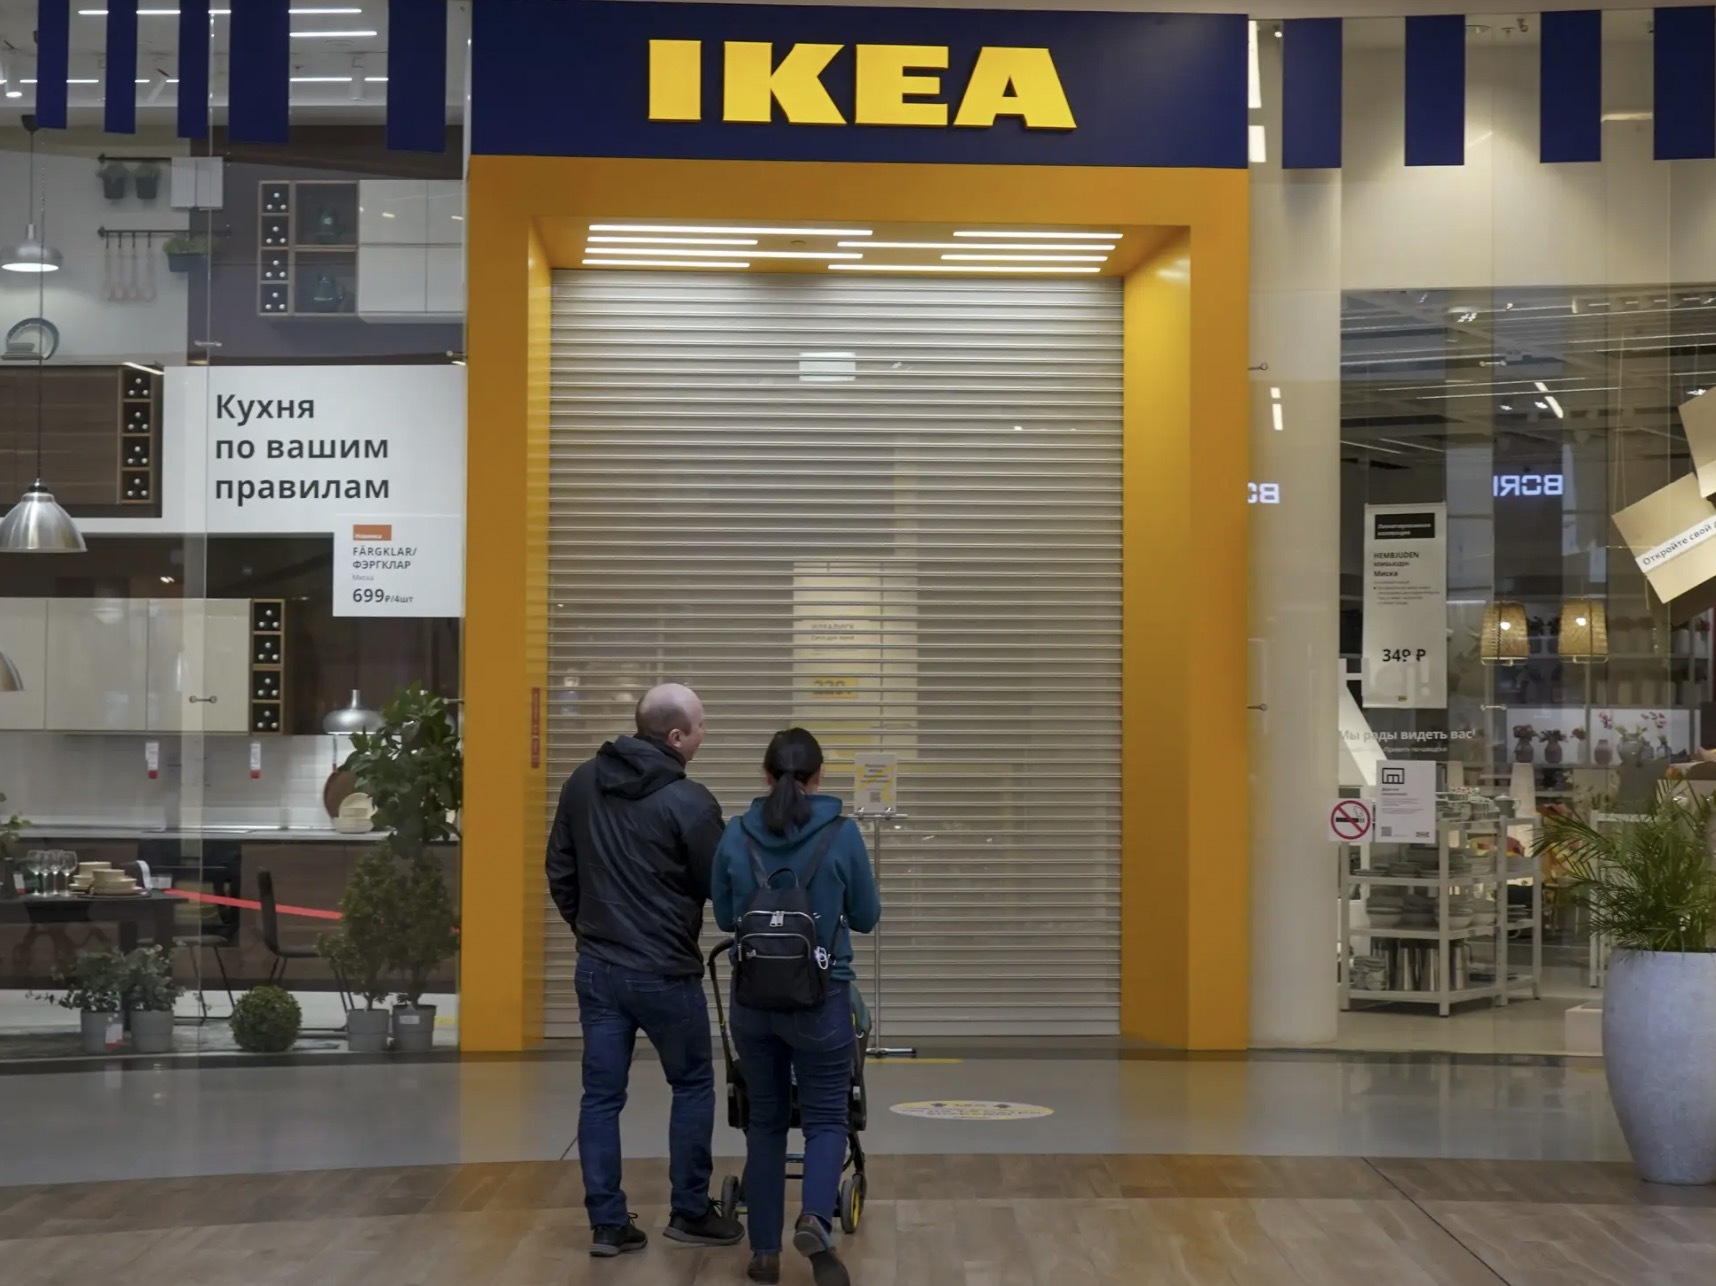 Яндекс.Маркет стал владельцем всех товаров IKEA, оставшихся в России